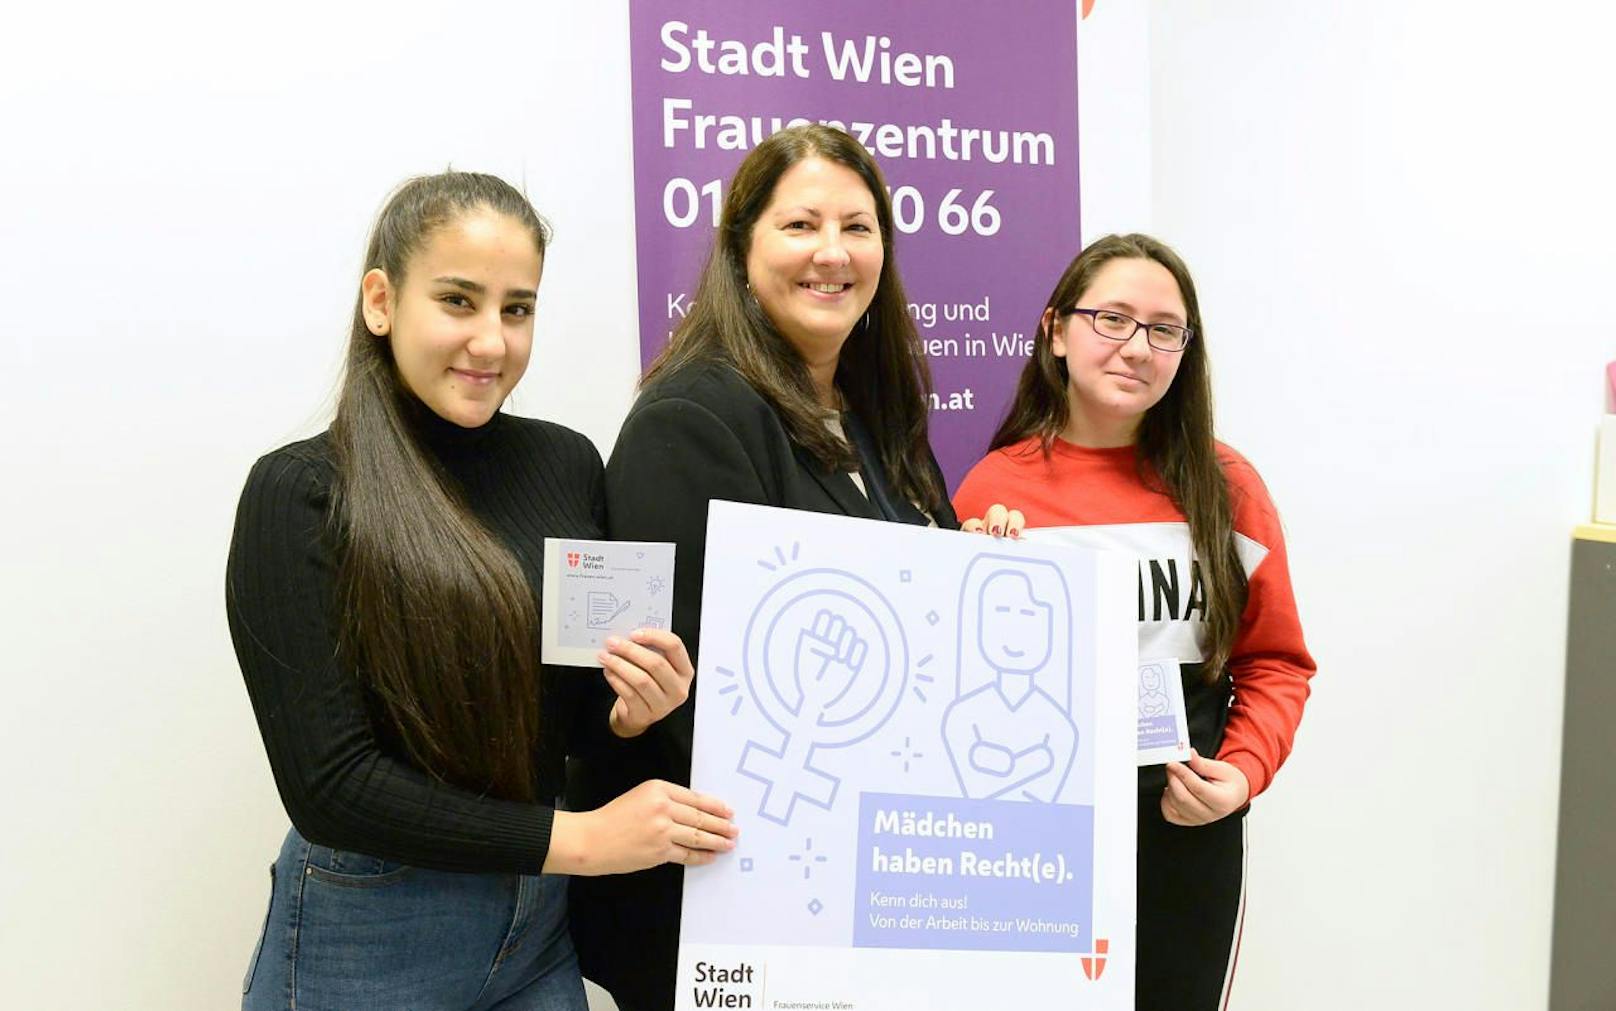 Mit neuen Digitalisierungs-Workshops will Frauenstadträtin Kathrin Gaal (SPÖ, Mitte) Mädchen und Frauen in Job und Alltag stärken. 